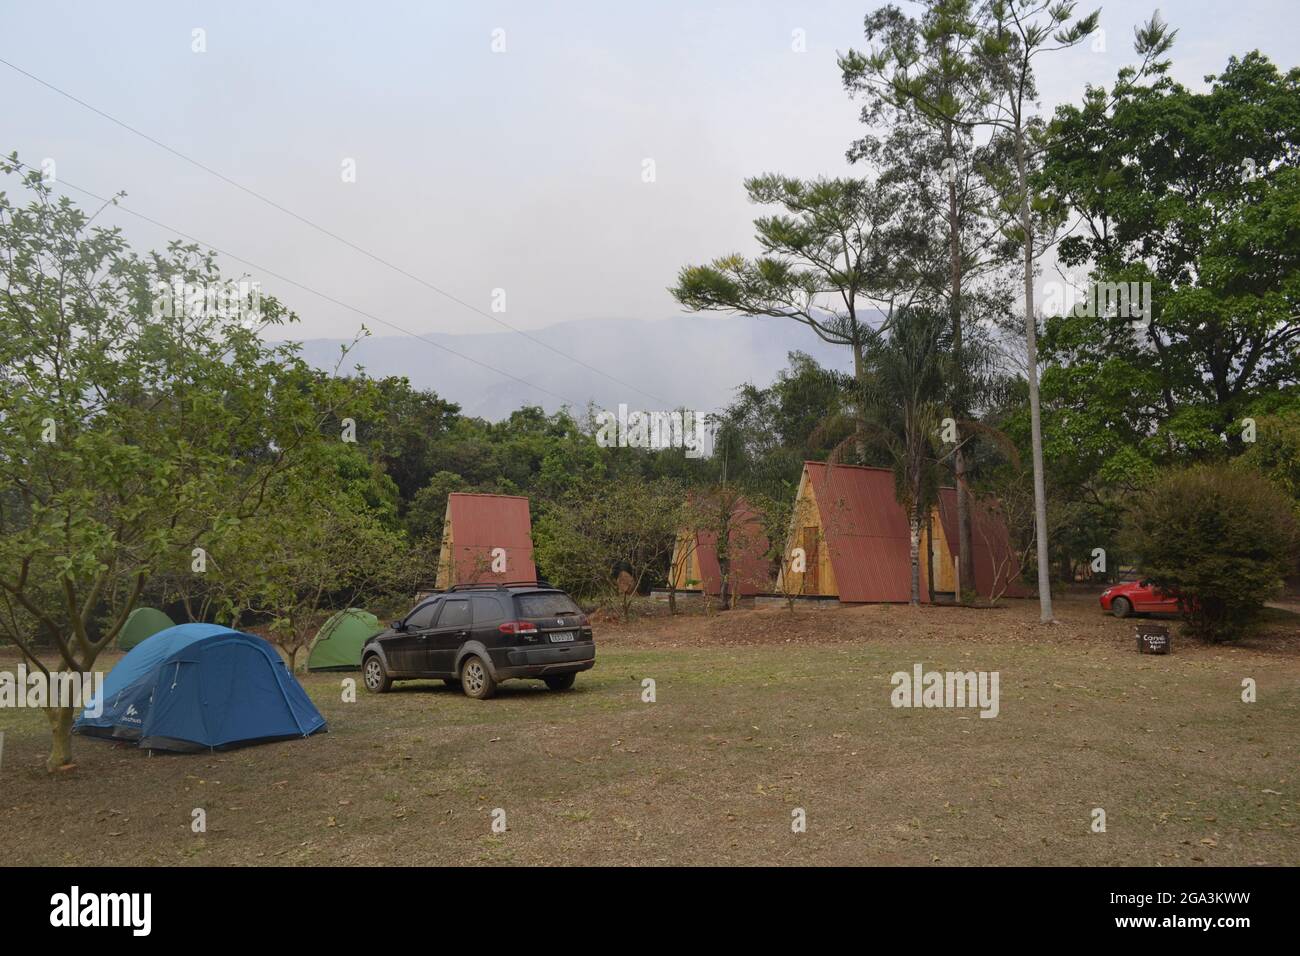 Camping-Szene mit einem Zelt, einem schwarzen Auto und ein paar Hütten, in Capotólio, MG - Brasilien Stockfoto